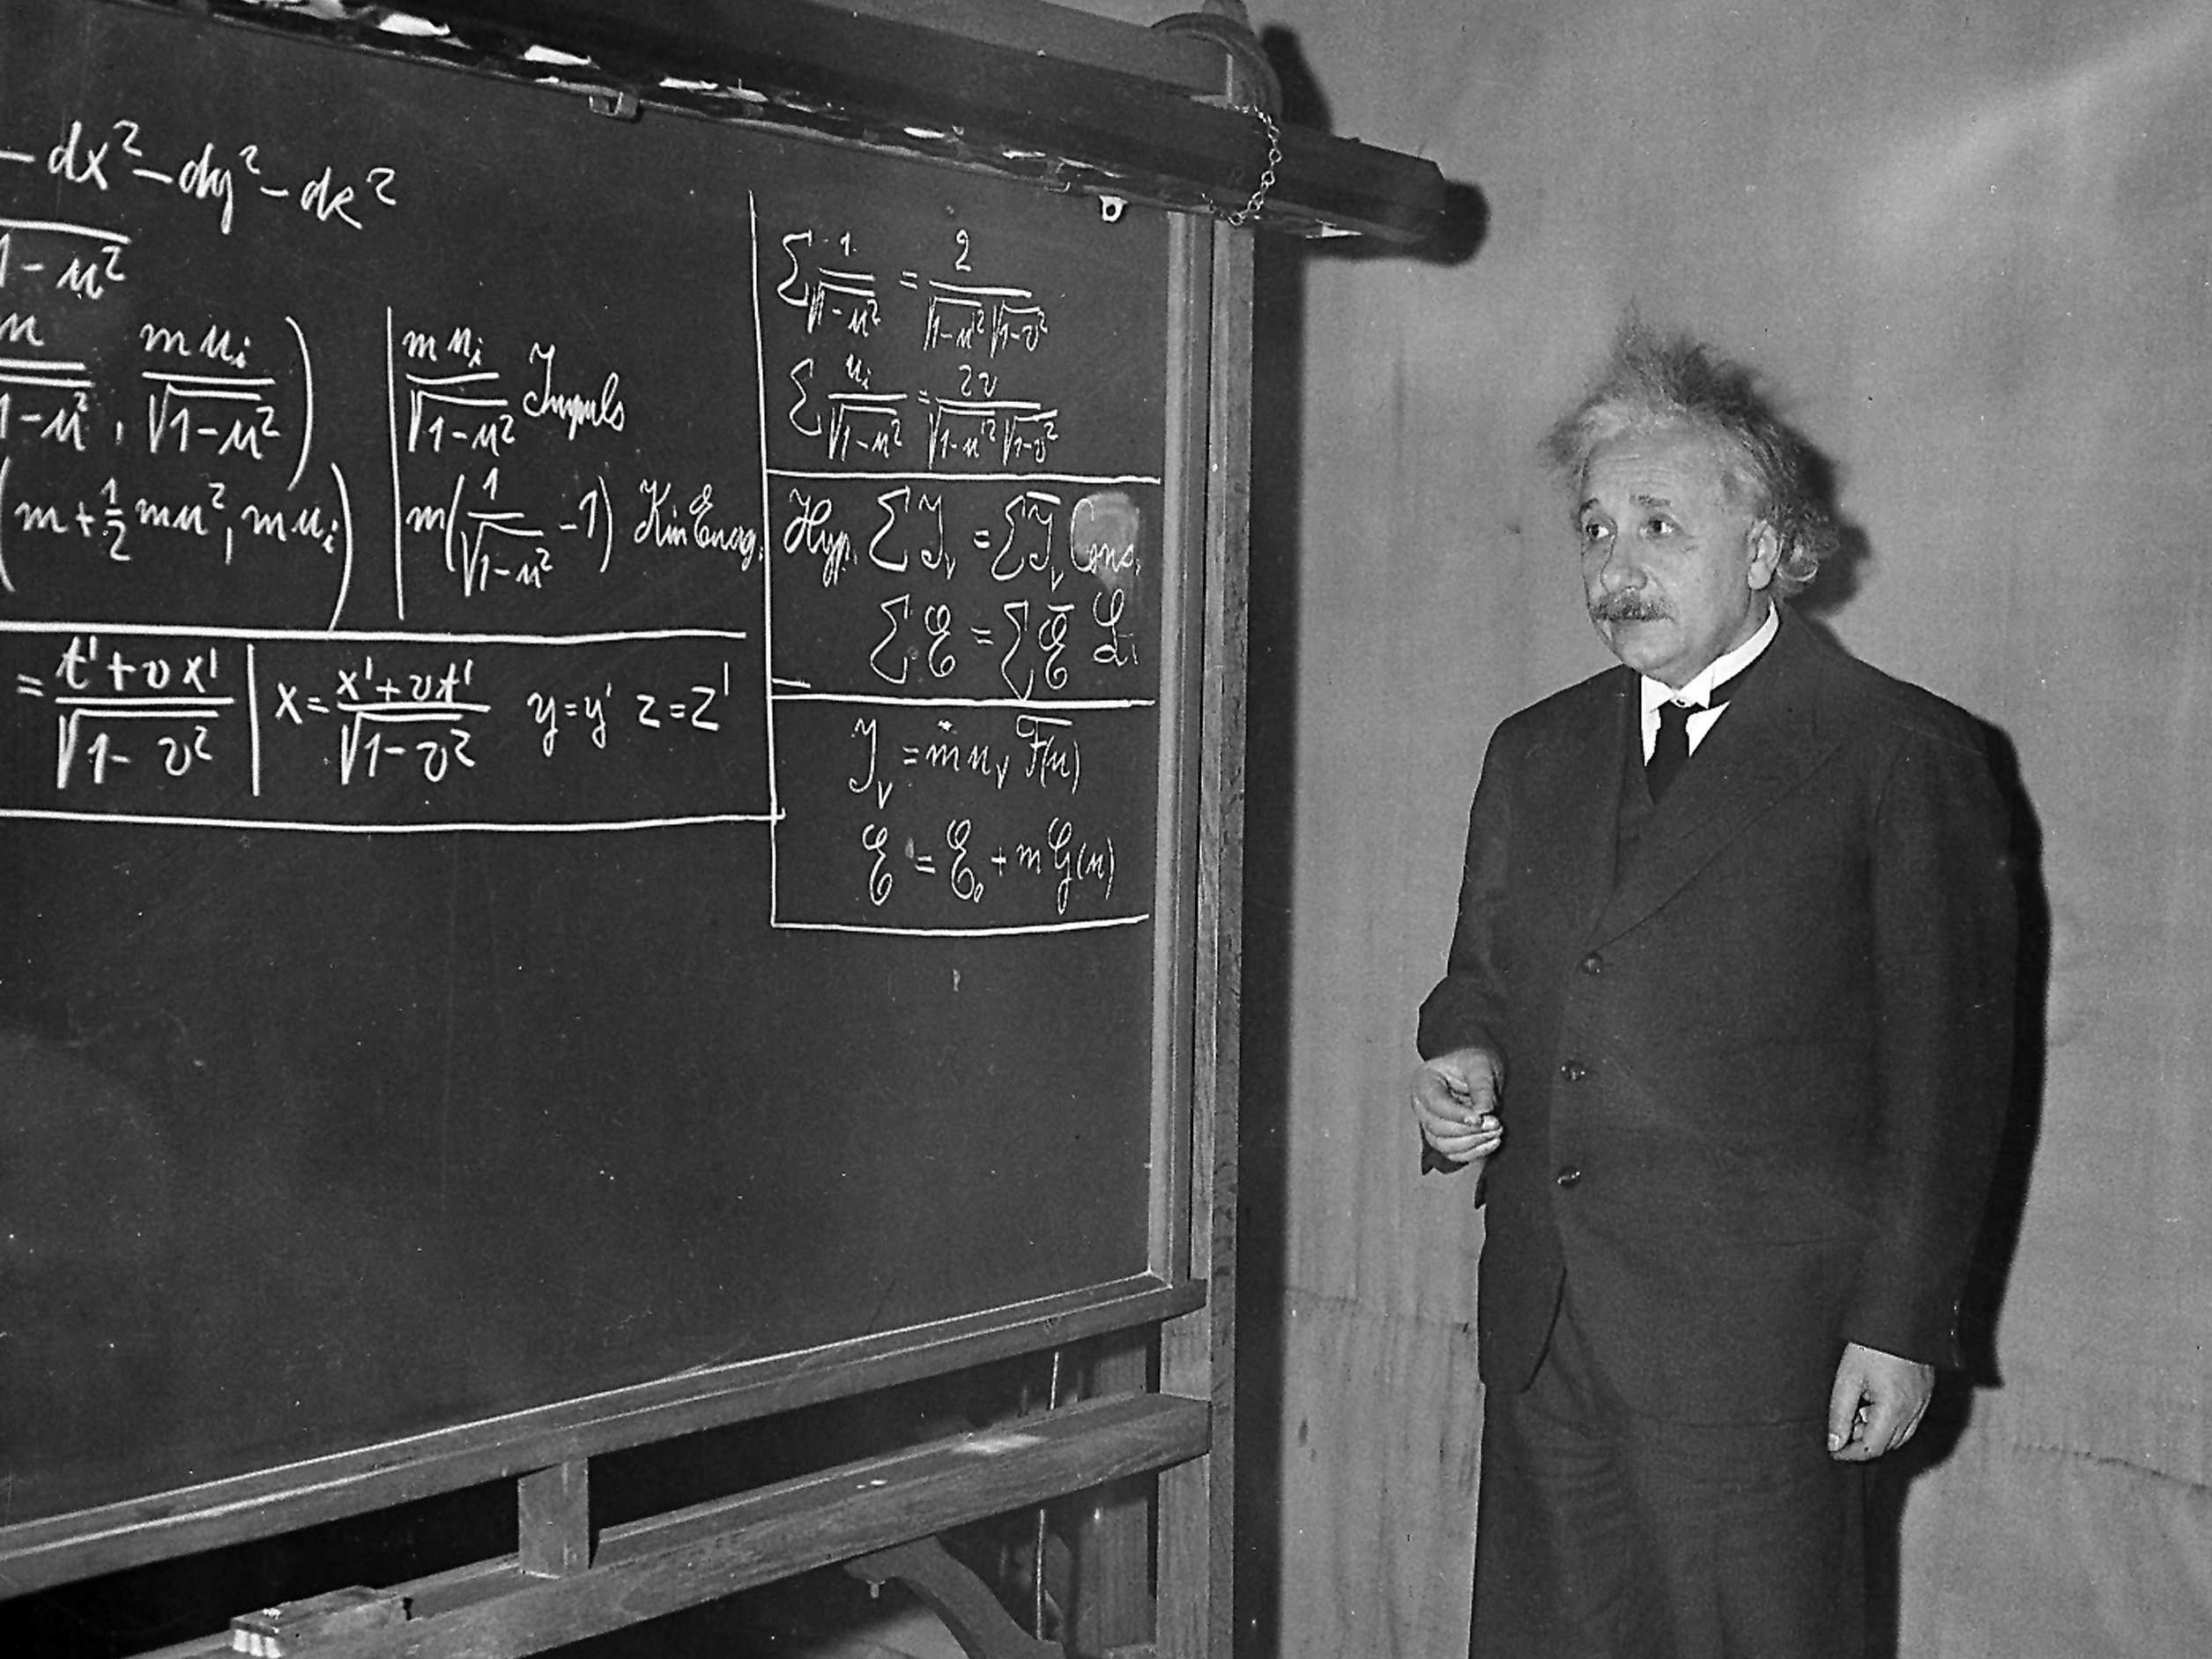 Einstein's ToR Formula